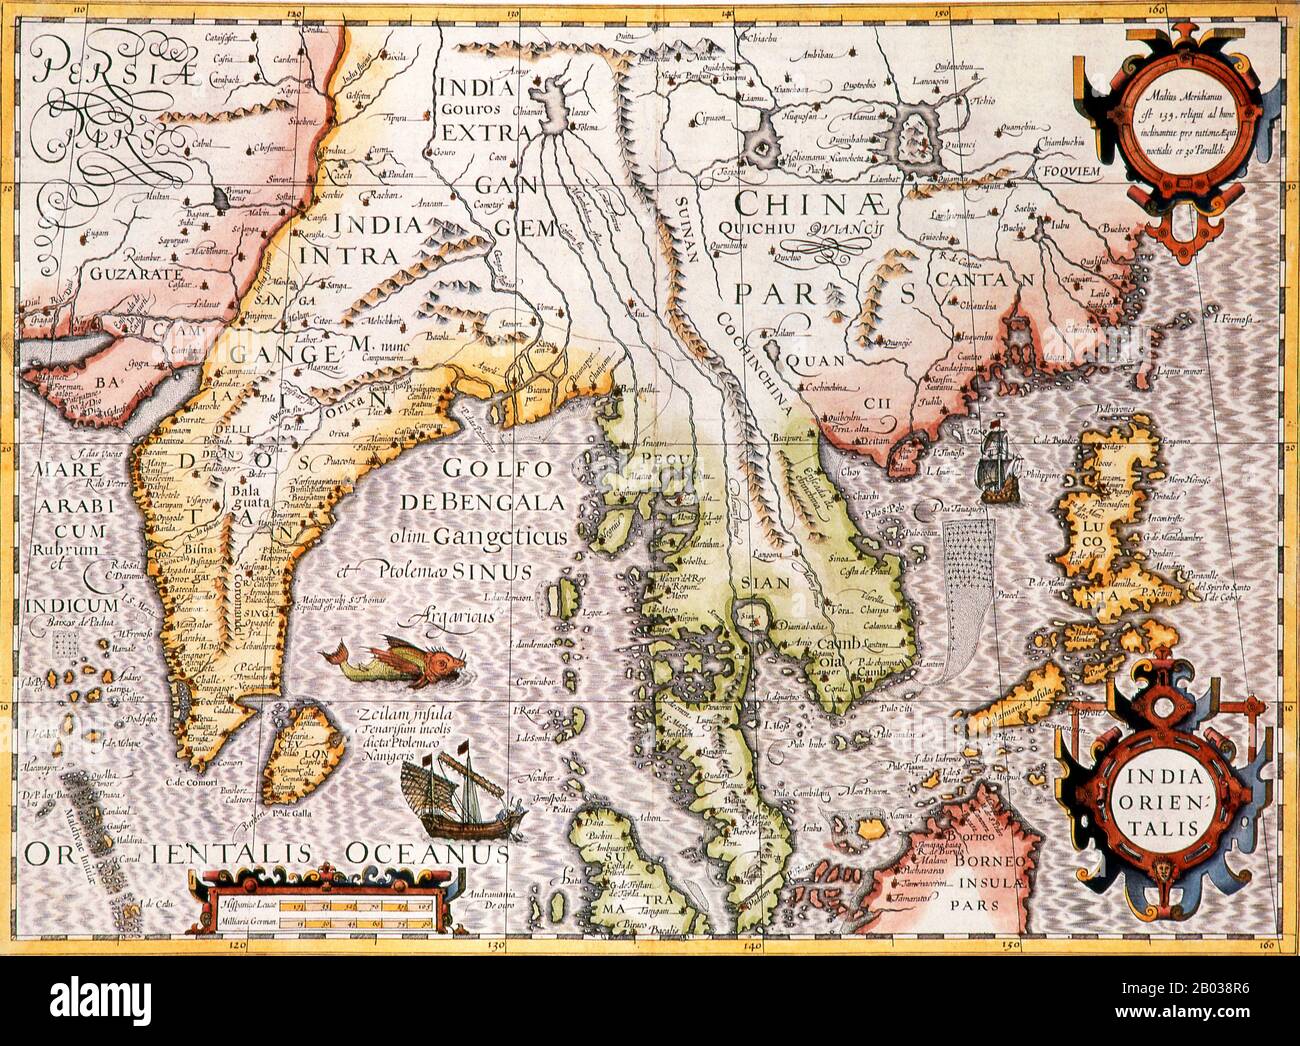 Jodocus Hondius (niederländischer Name: Joost de Hondt) (1563 - 1612) war ein flämischer Graveur und Kartograf. Er half, Amsterdam als Zentrum der Kartografie in Europa im 17. Jahrhundert zu etablieren. Stockfoto